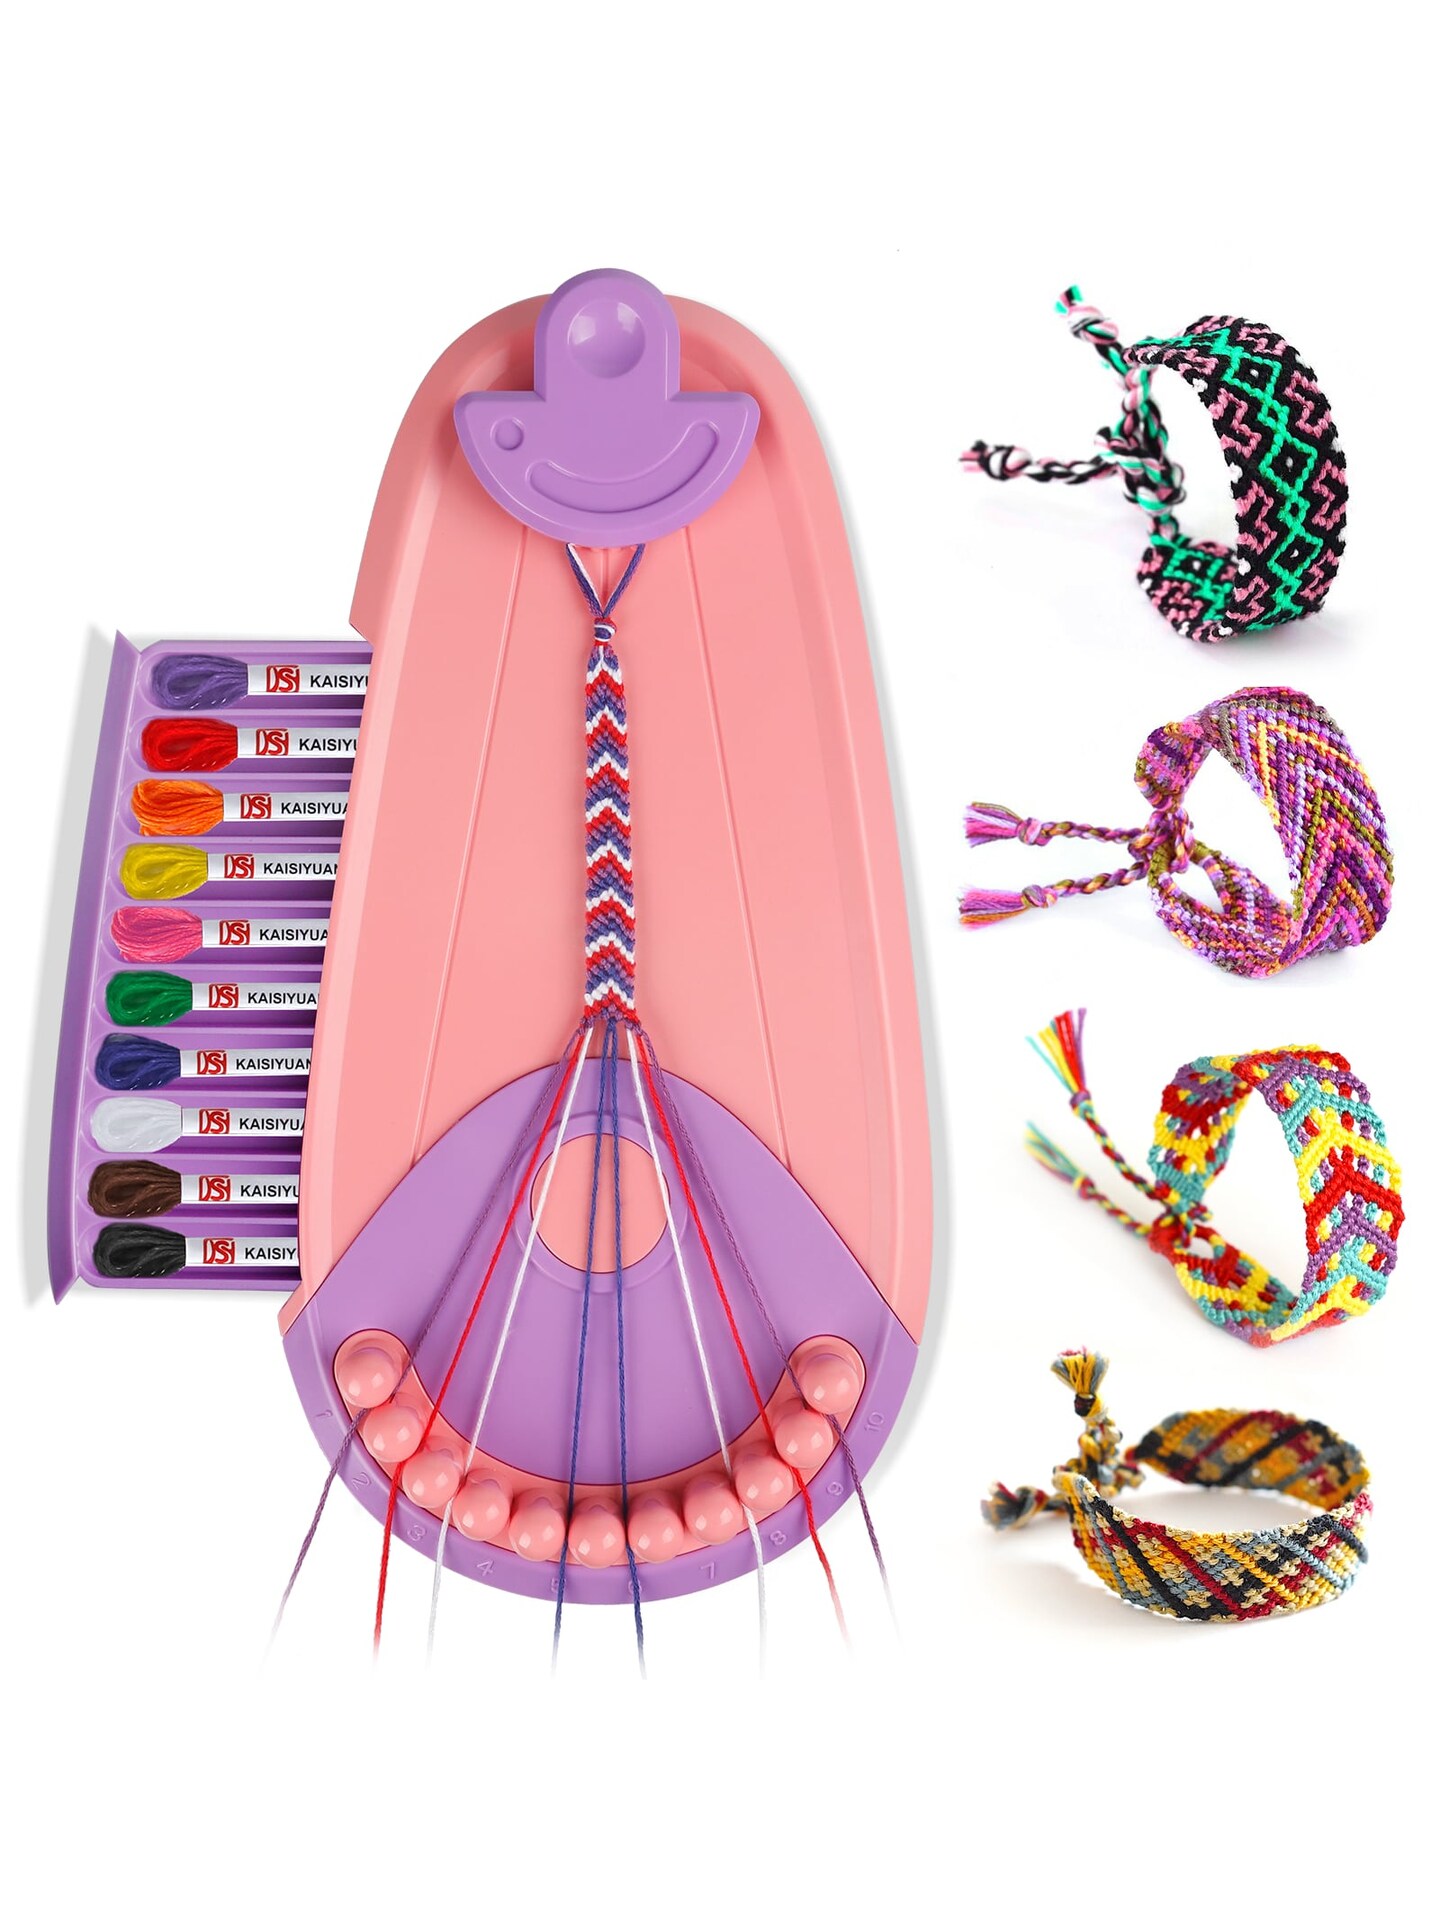 Friendship Bracelet Maker Kit, Make Bracelet Craft Toys for Girls